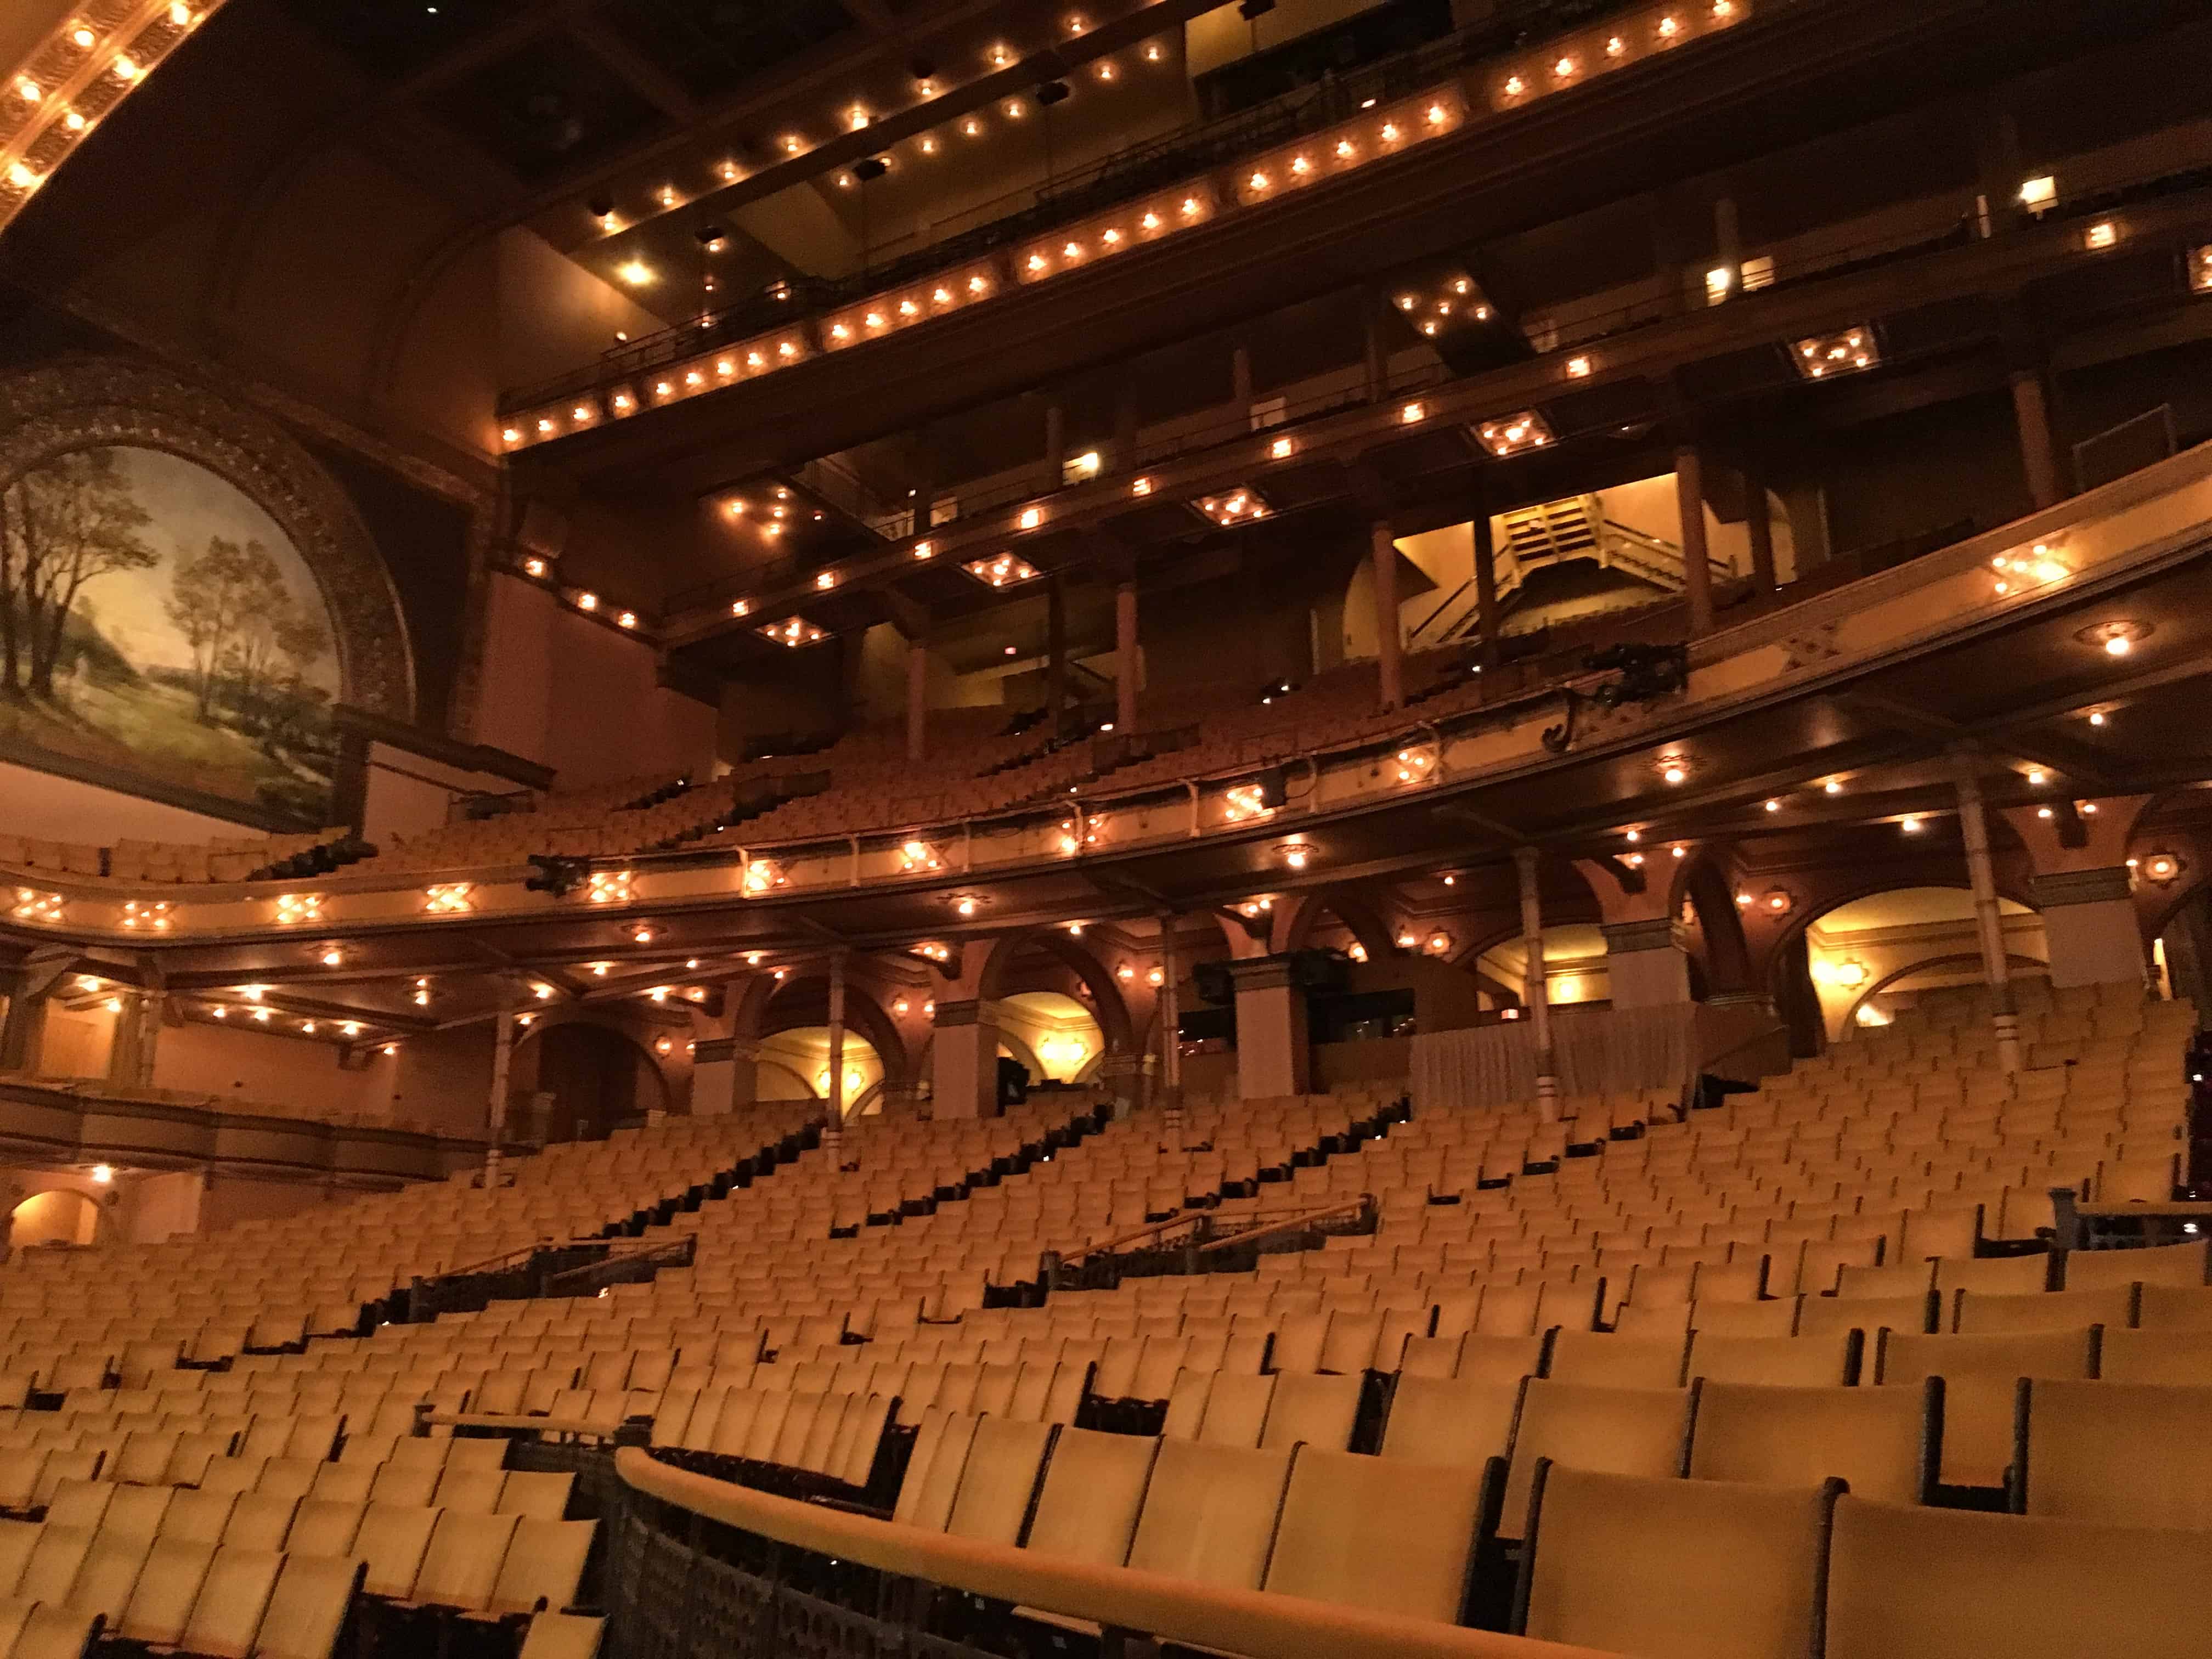 Main seating area in the Auditorium Theatre in Chicago, Illinois